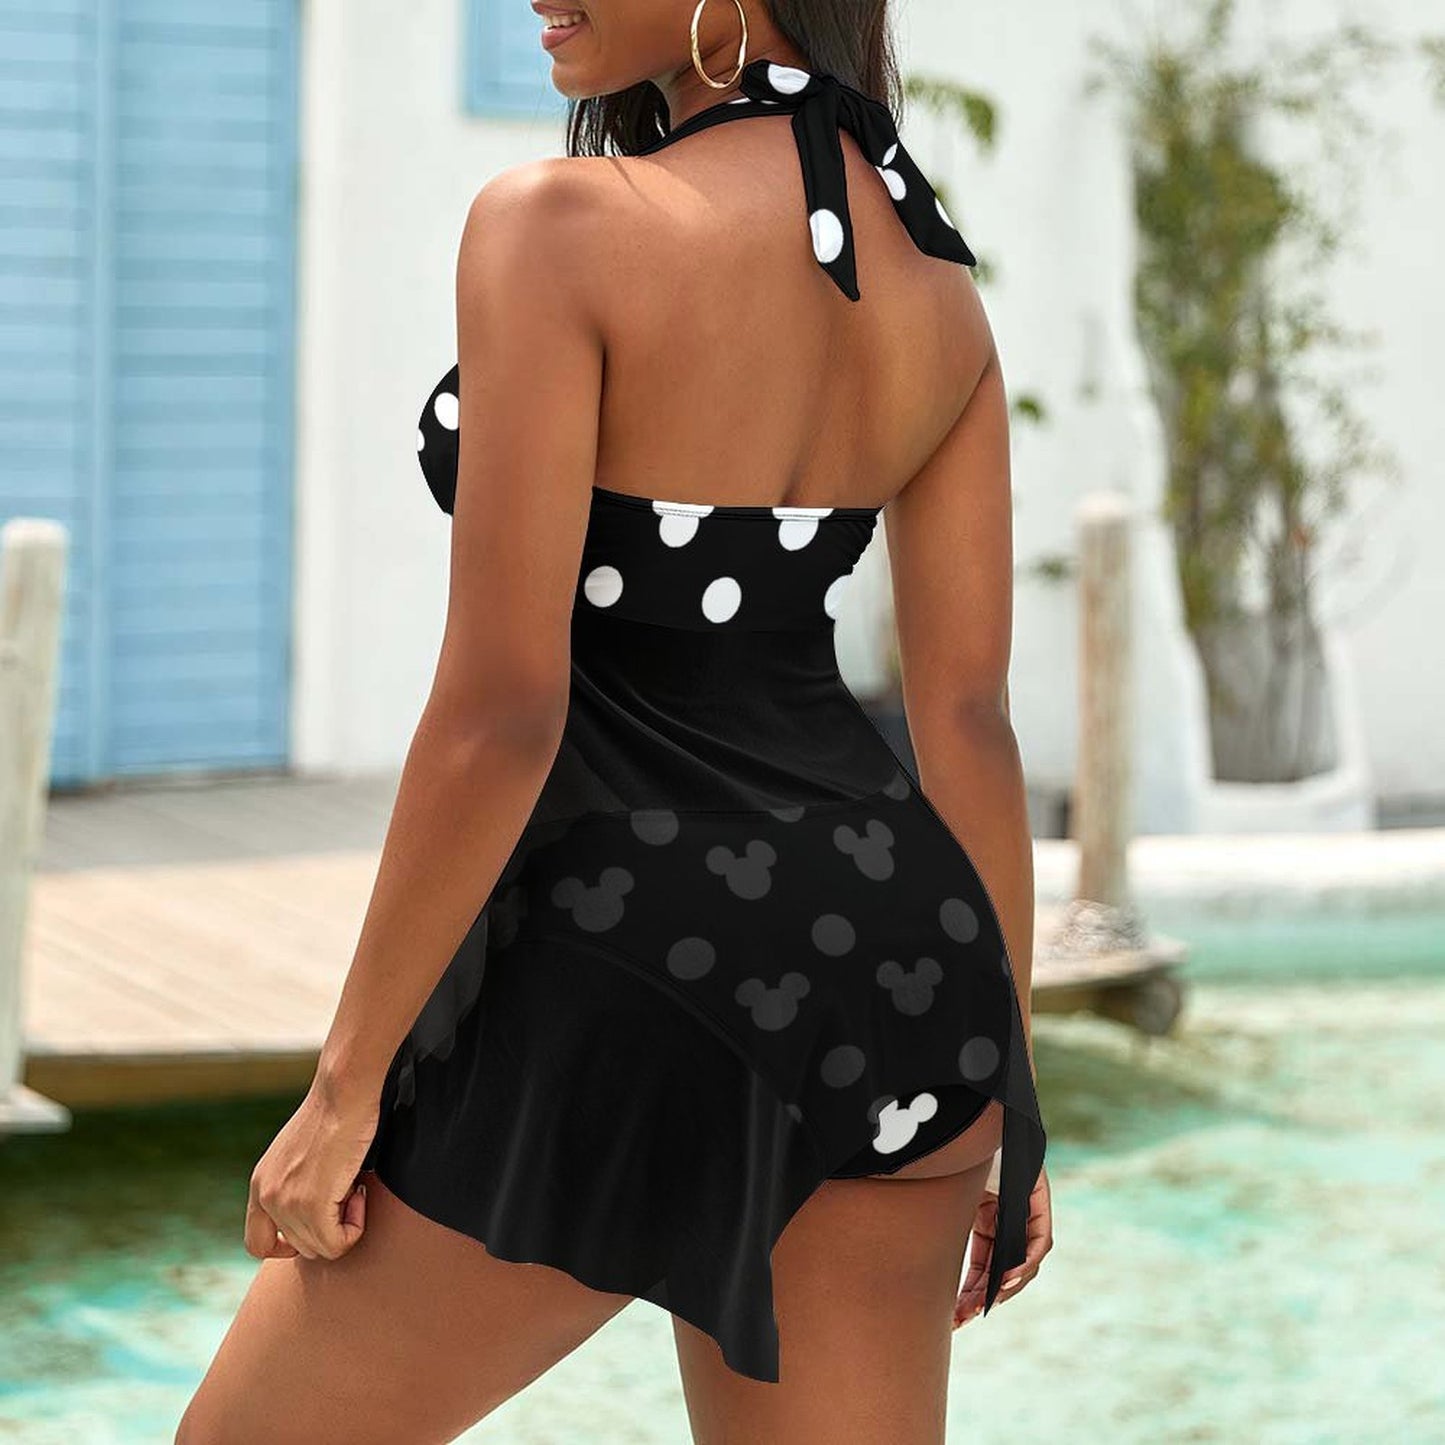 Black With White Mickey Polka Dots Women's Split Skirt Swimsuit